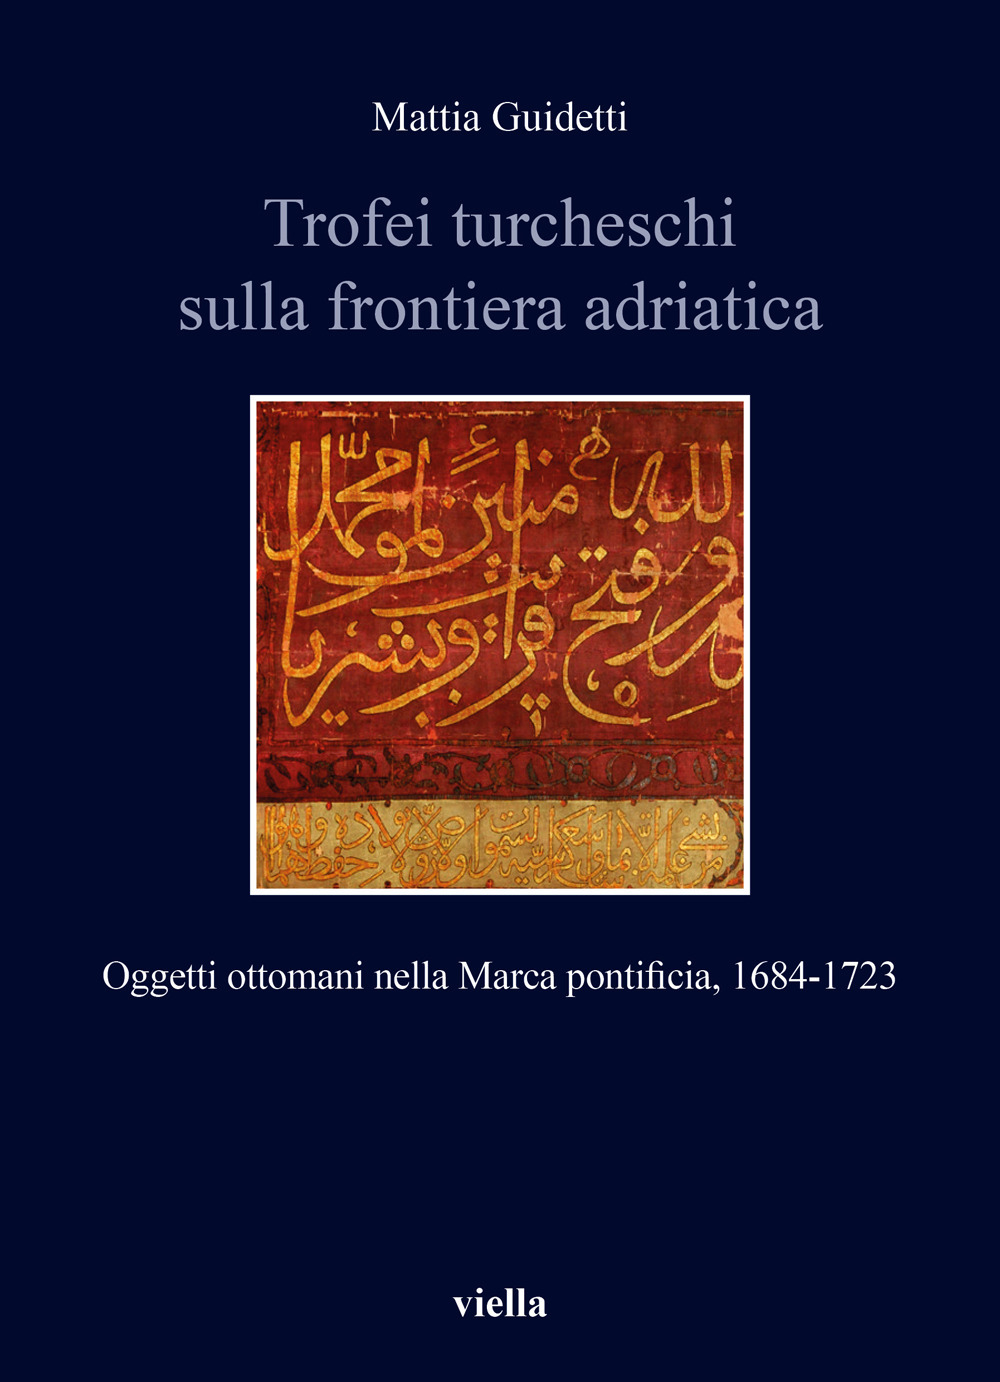 Trofei turcheschi sulla frontiera adriatica. Oggetti ottomani nella Marca pontificia, 1684-1723